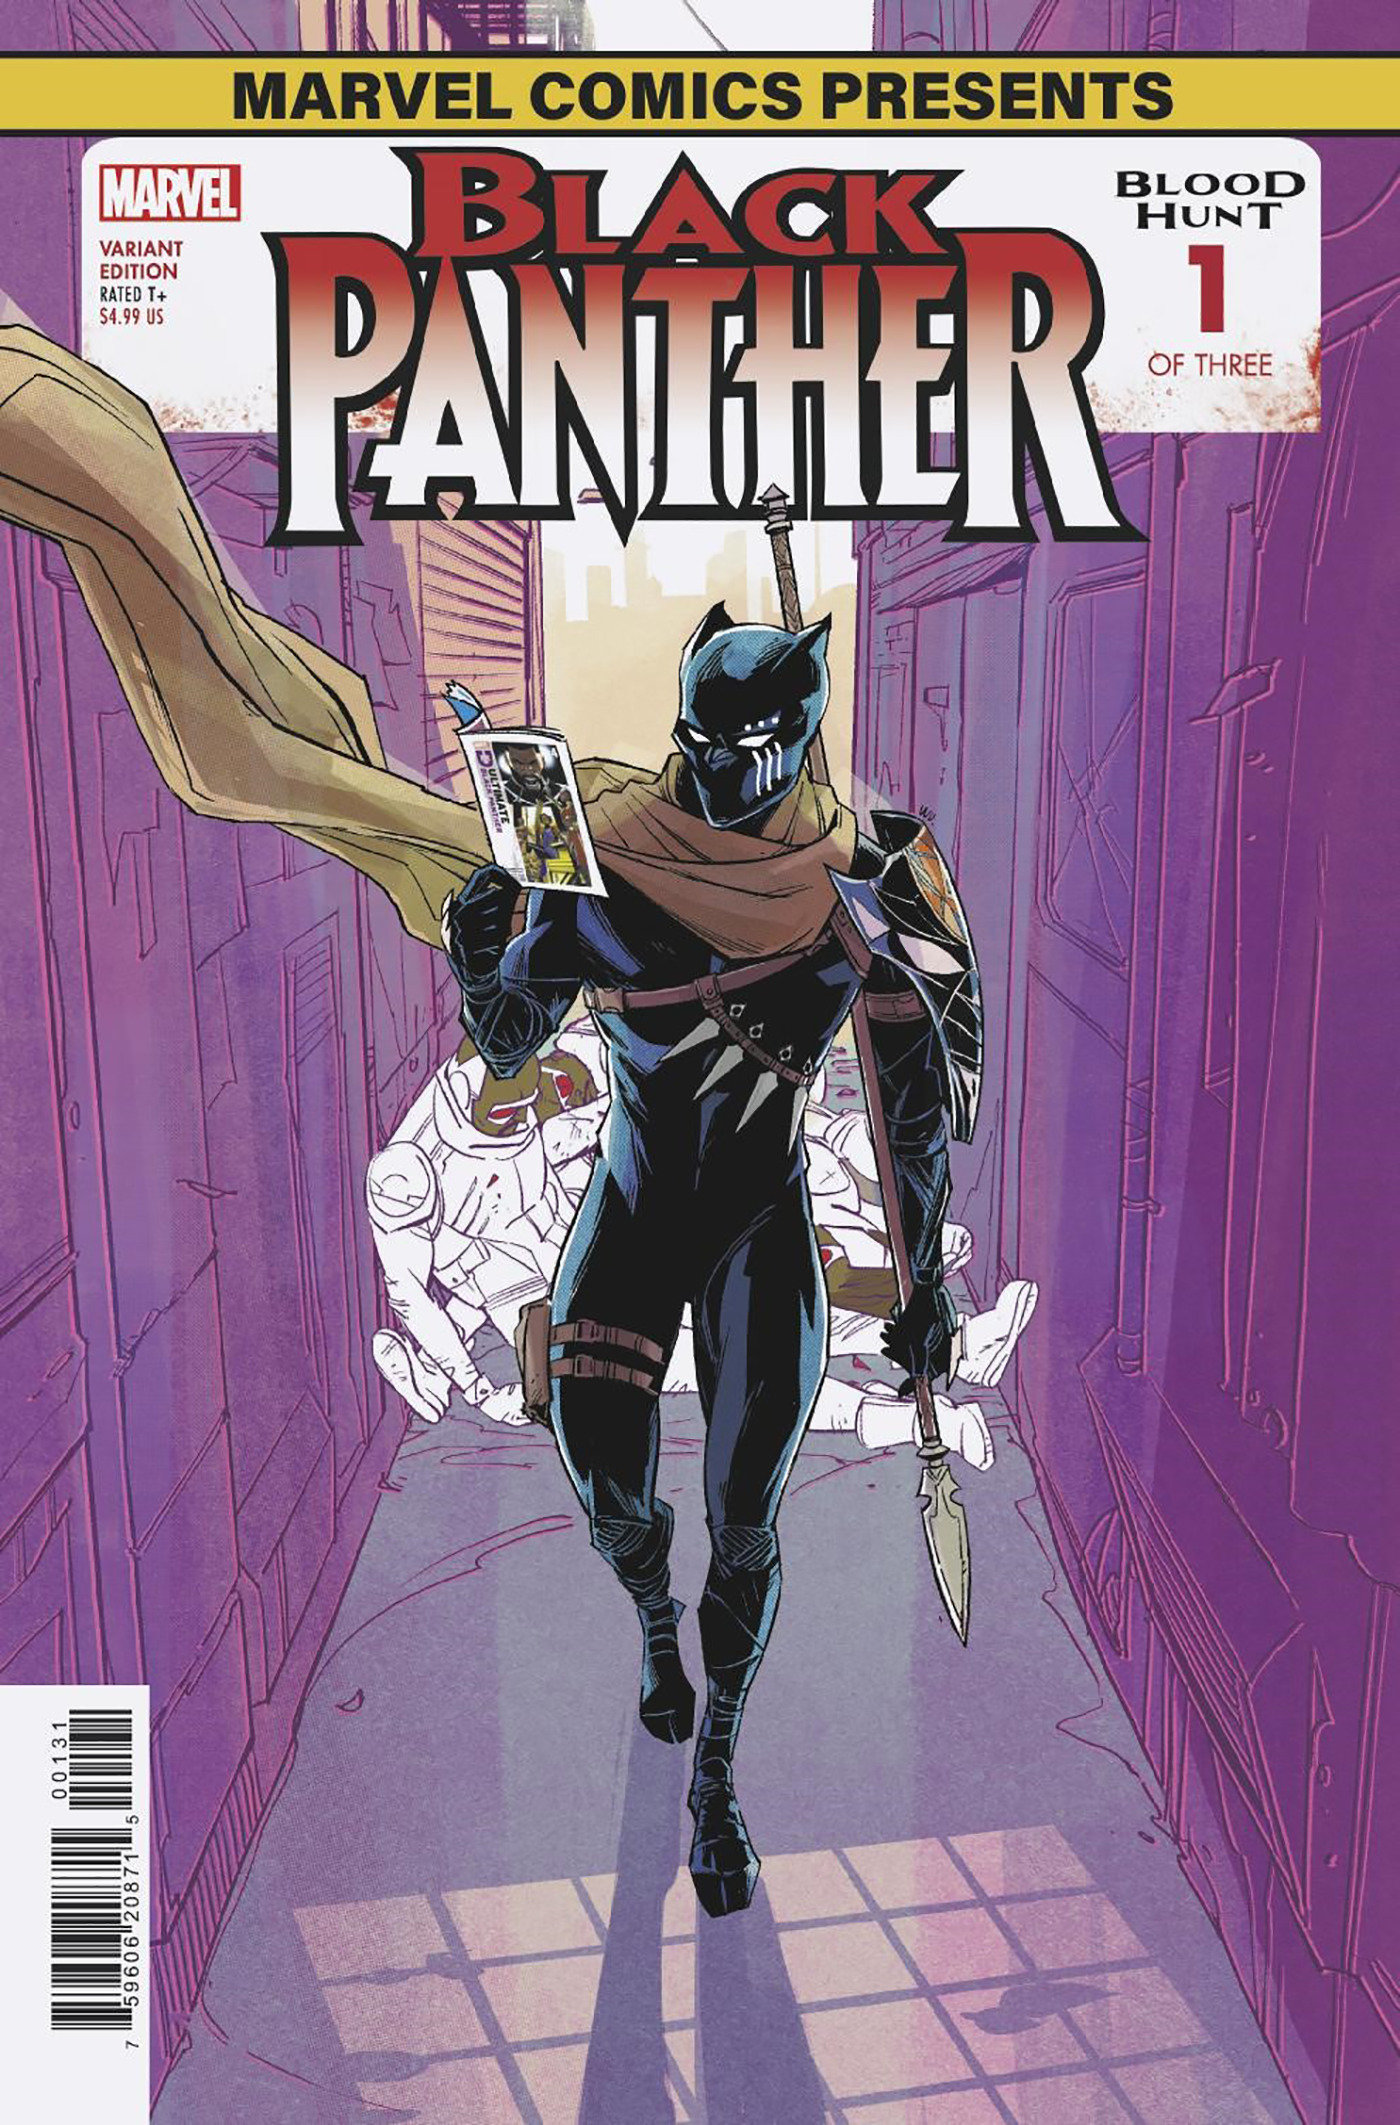 Black Panther: Blood Hunt #1 Wu Marvel Comics Presents Variant